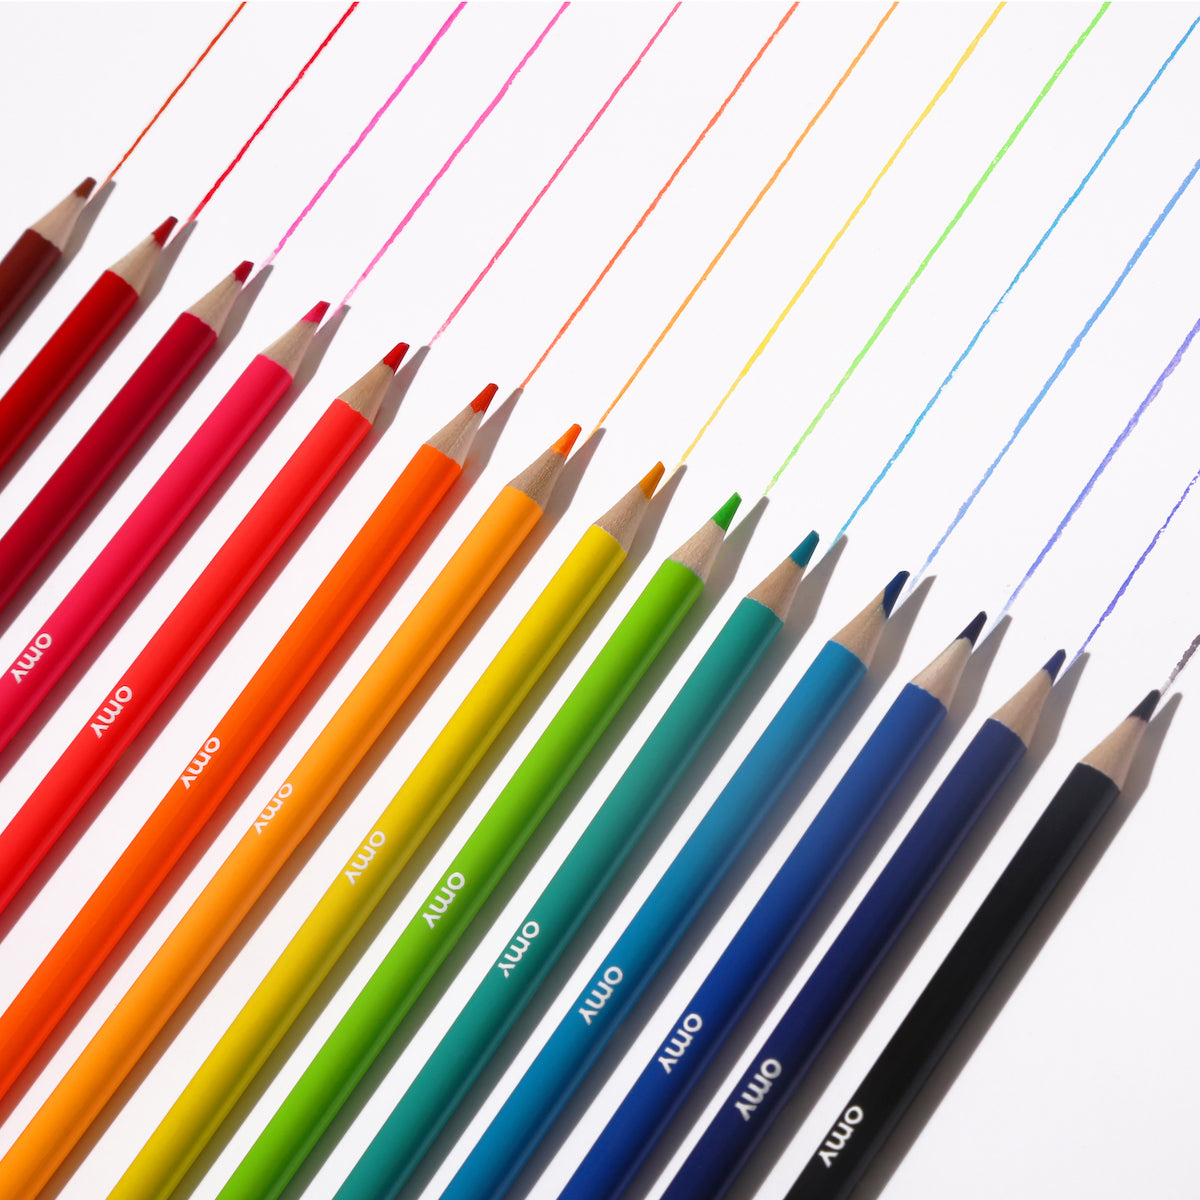 Met deze OMY kleurpotloden maakt jouw kindje de mooiste tekeningen! In deze set met potloden zitten maar liefst 16 mooie kleuren: 10 neon kleuren en 6 glimmende kleuren. VanZus.